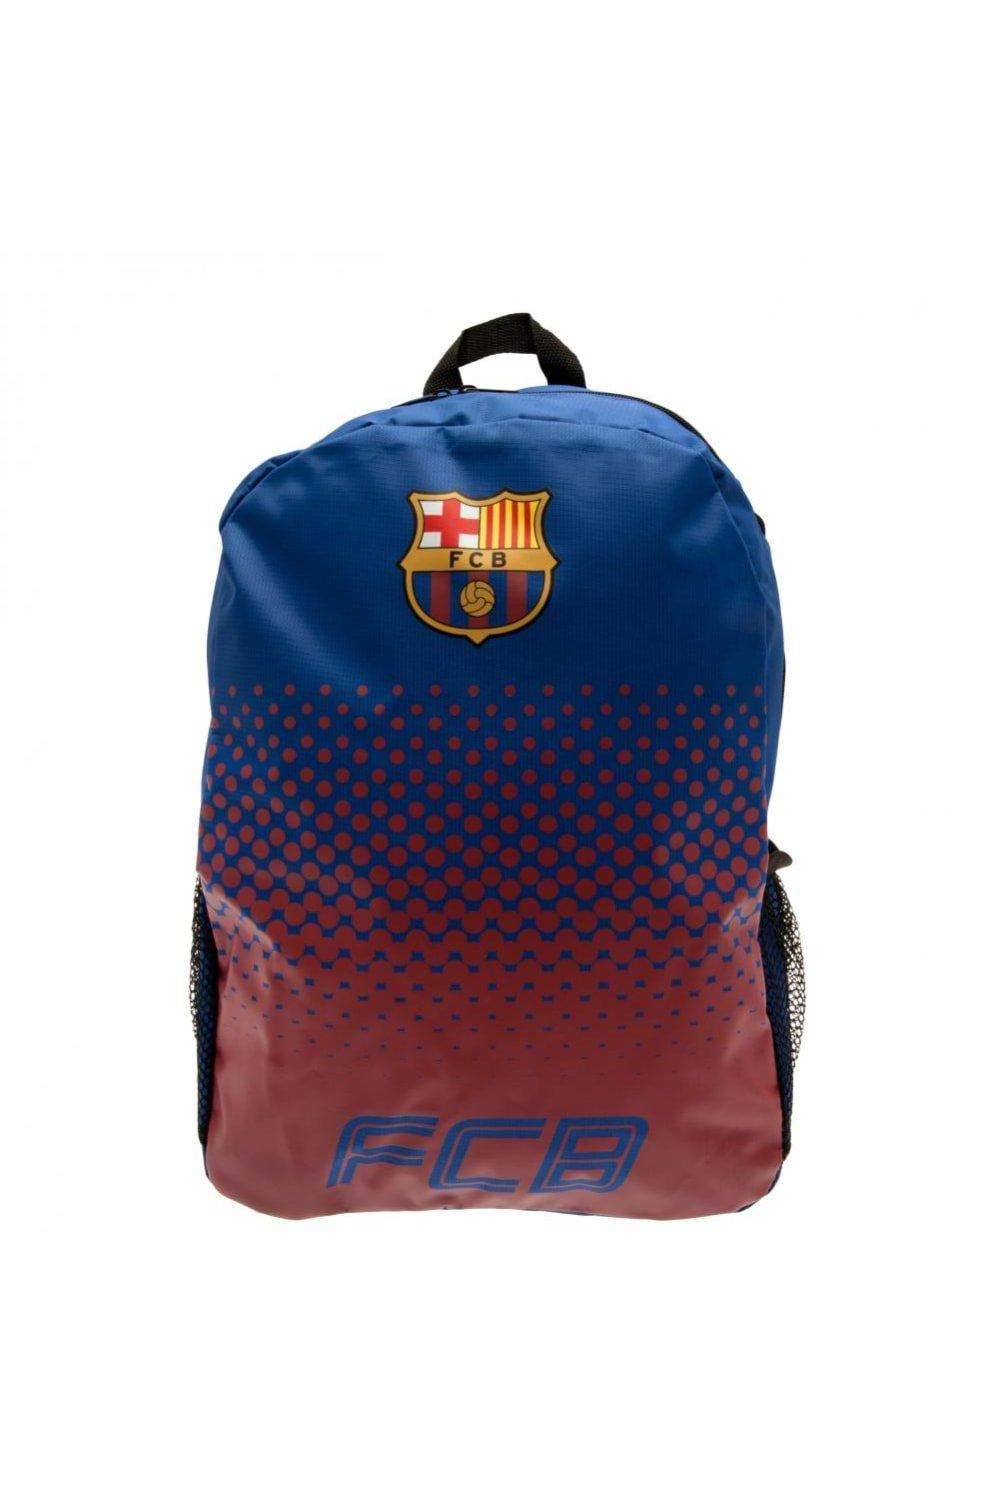 Рюкзак Fade Design с сетчатыми боковыми карманами FC Barcelona, синий водонепроницаемый и износостойкий рюкзак из ткани оксфорд с двумя боковыми сетчатыми карманами